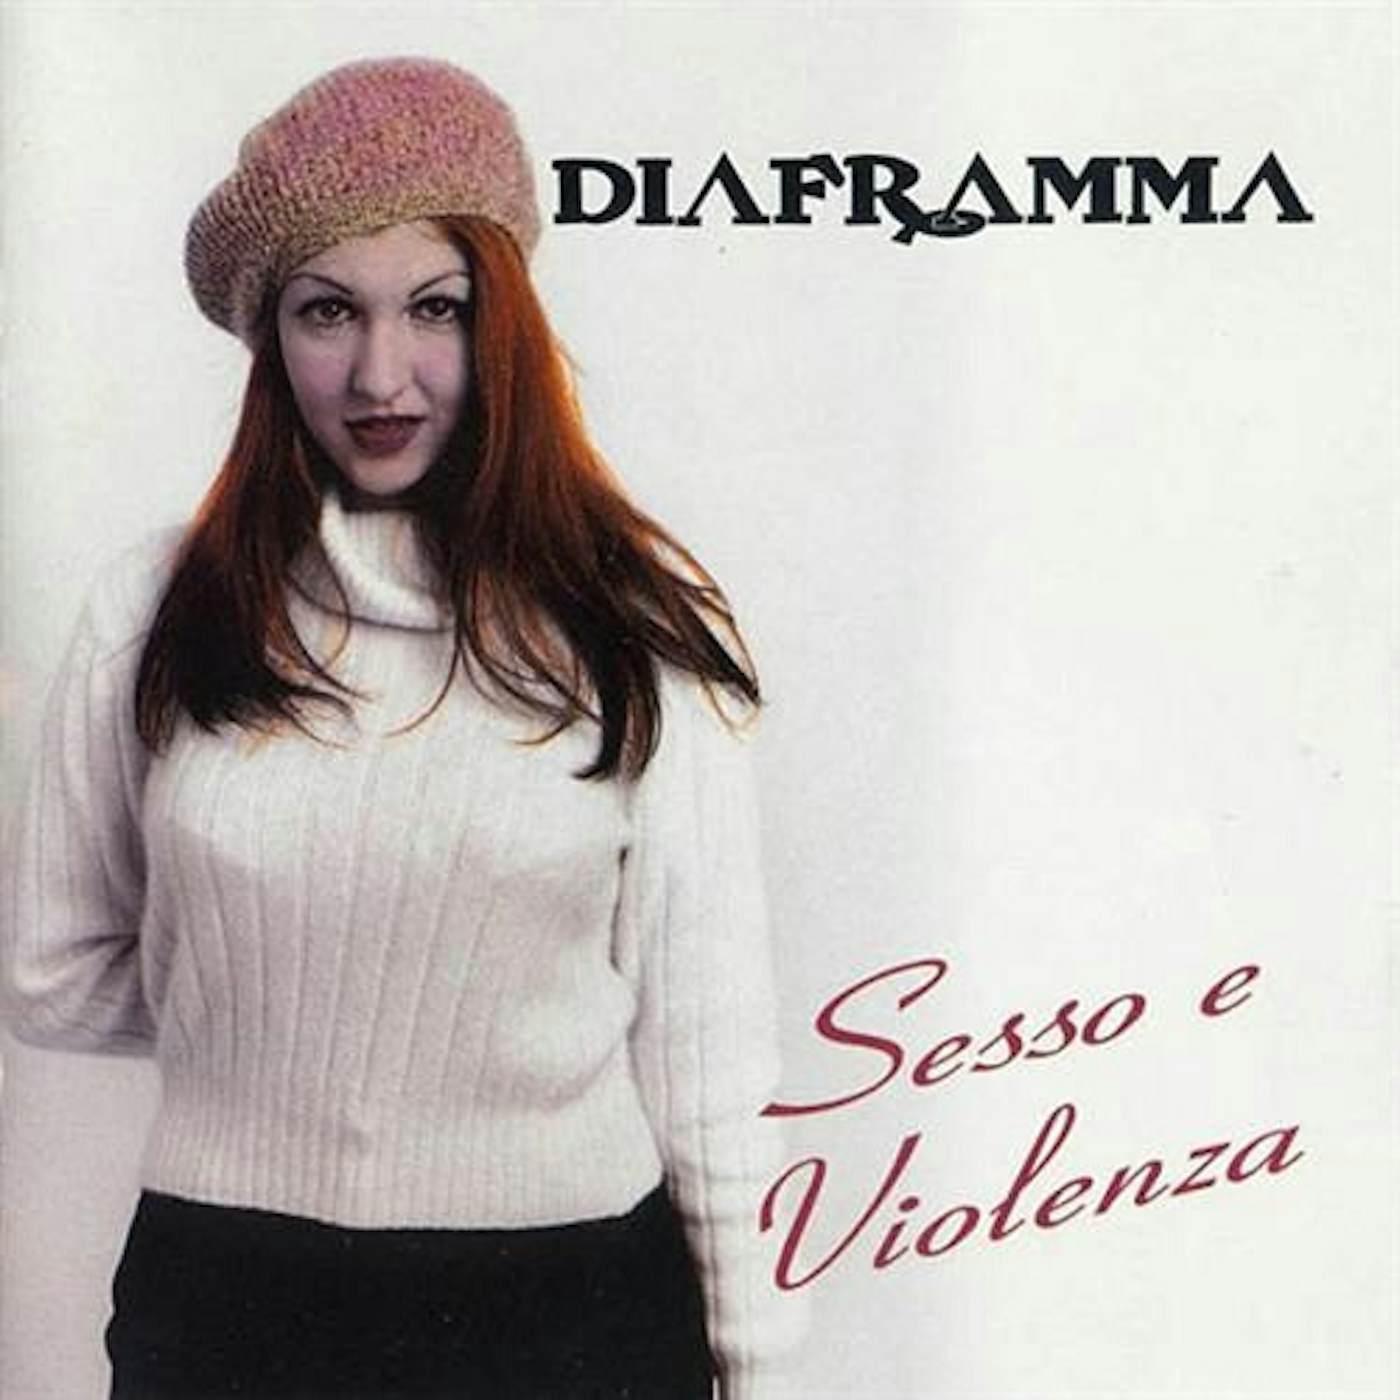 Diaframma Sesso E Violenza Vinyl Record